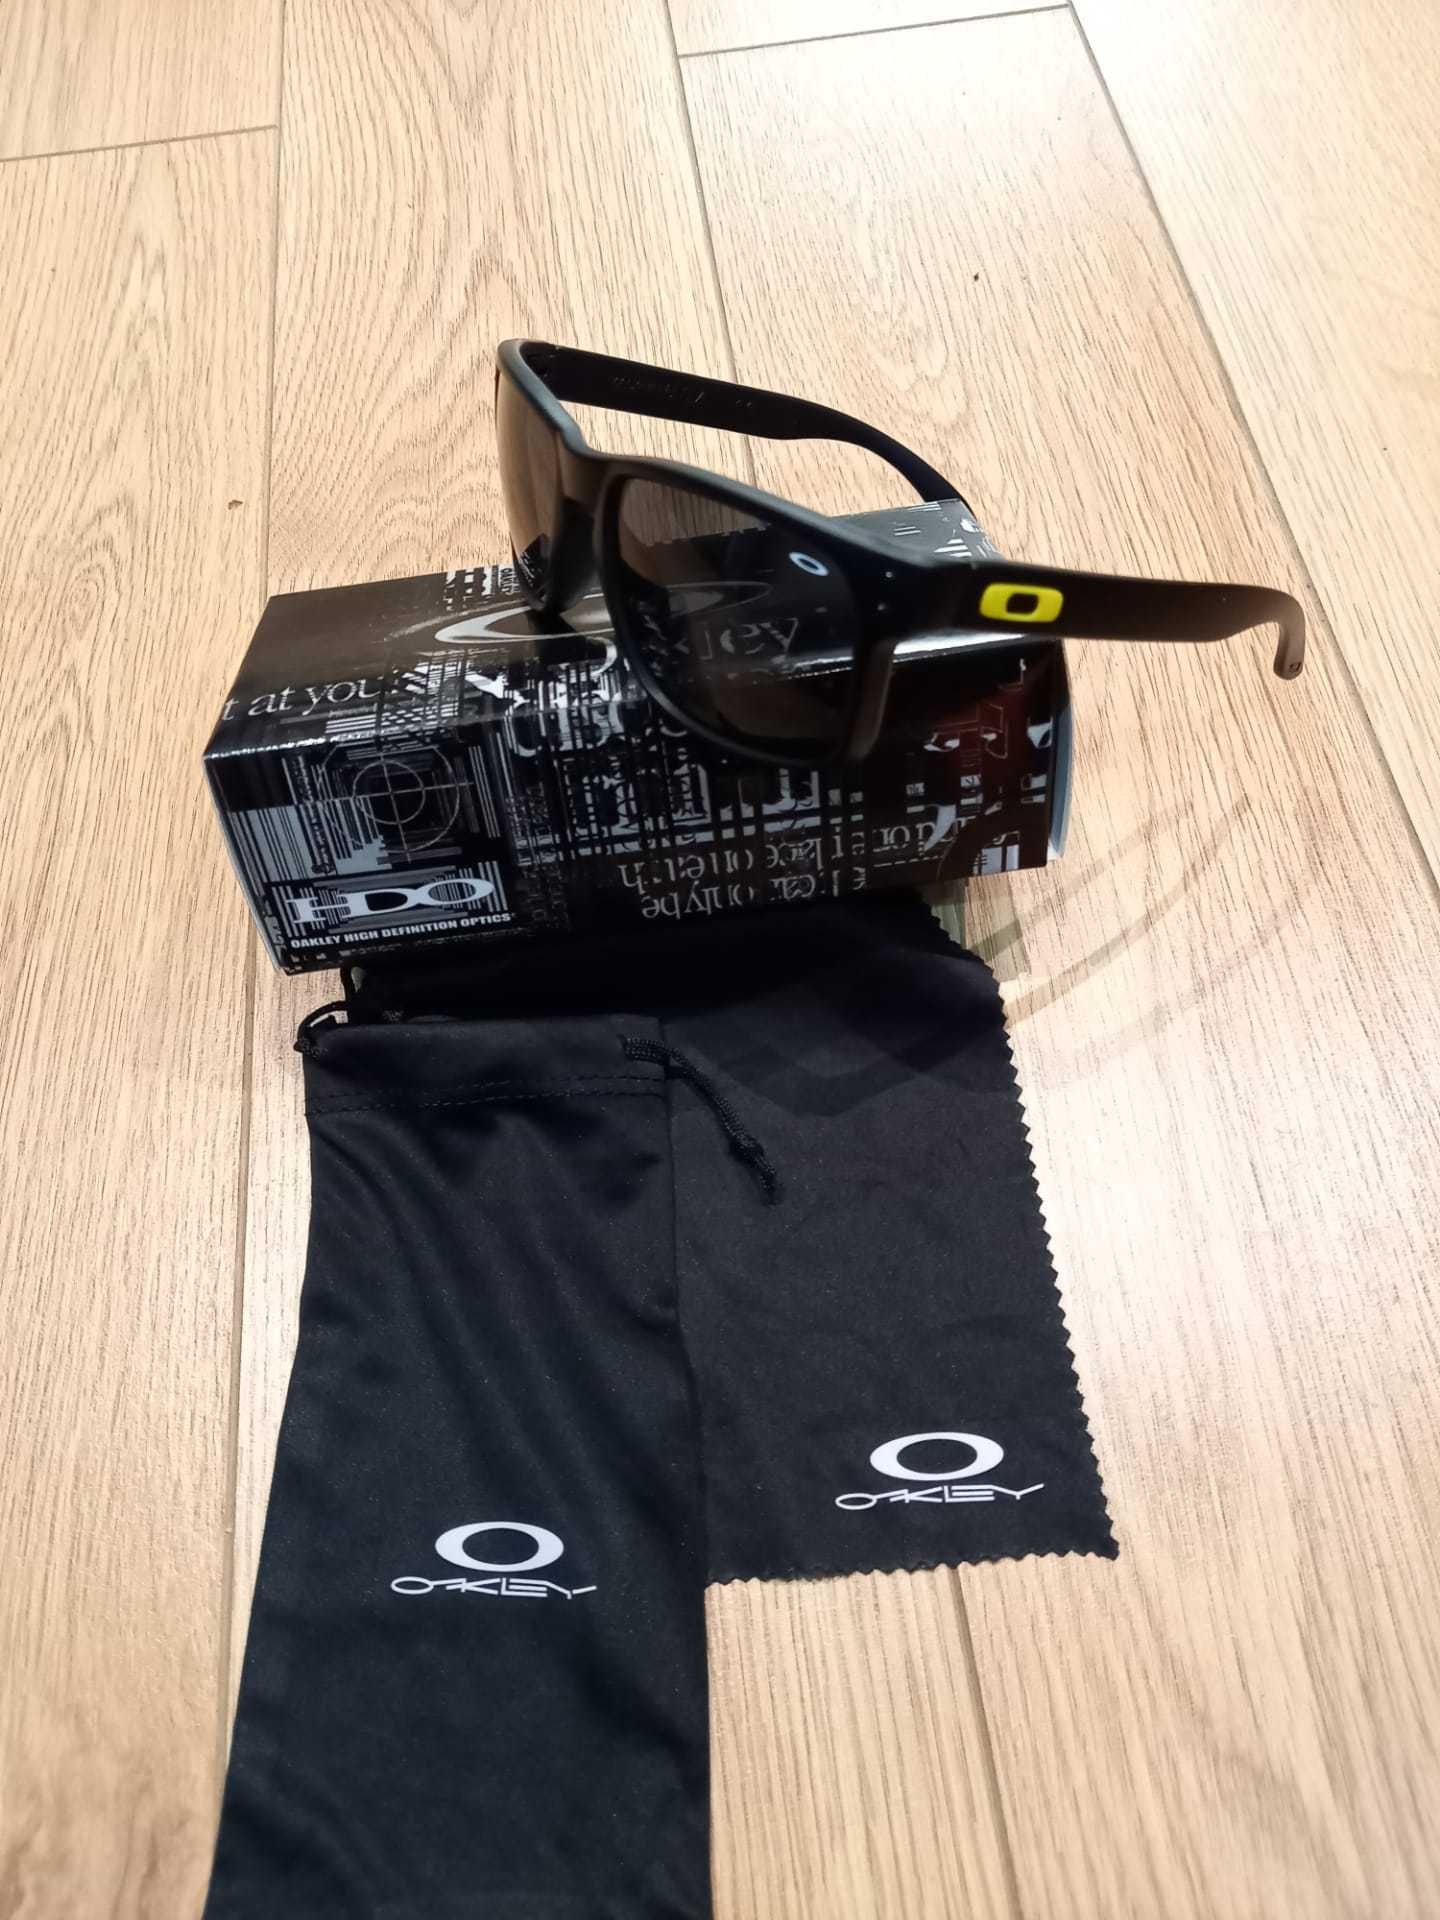 Óculos de sol Oakley VR/46 Valentino Rossi